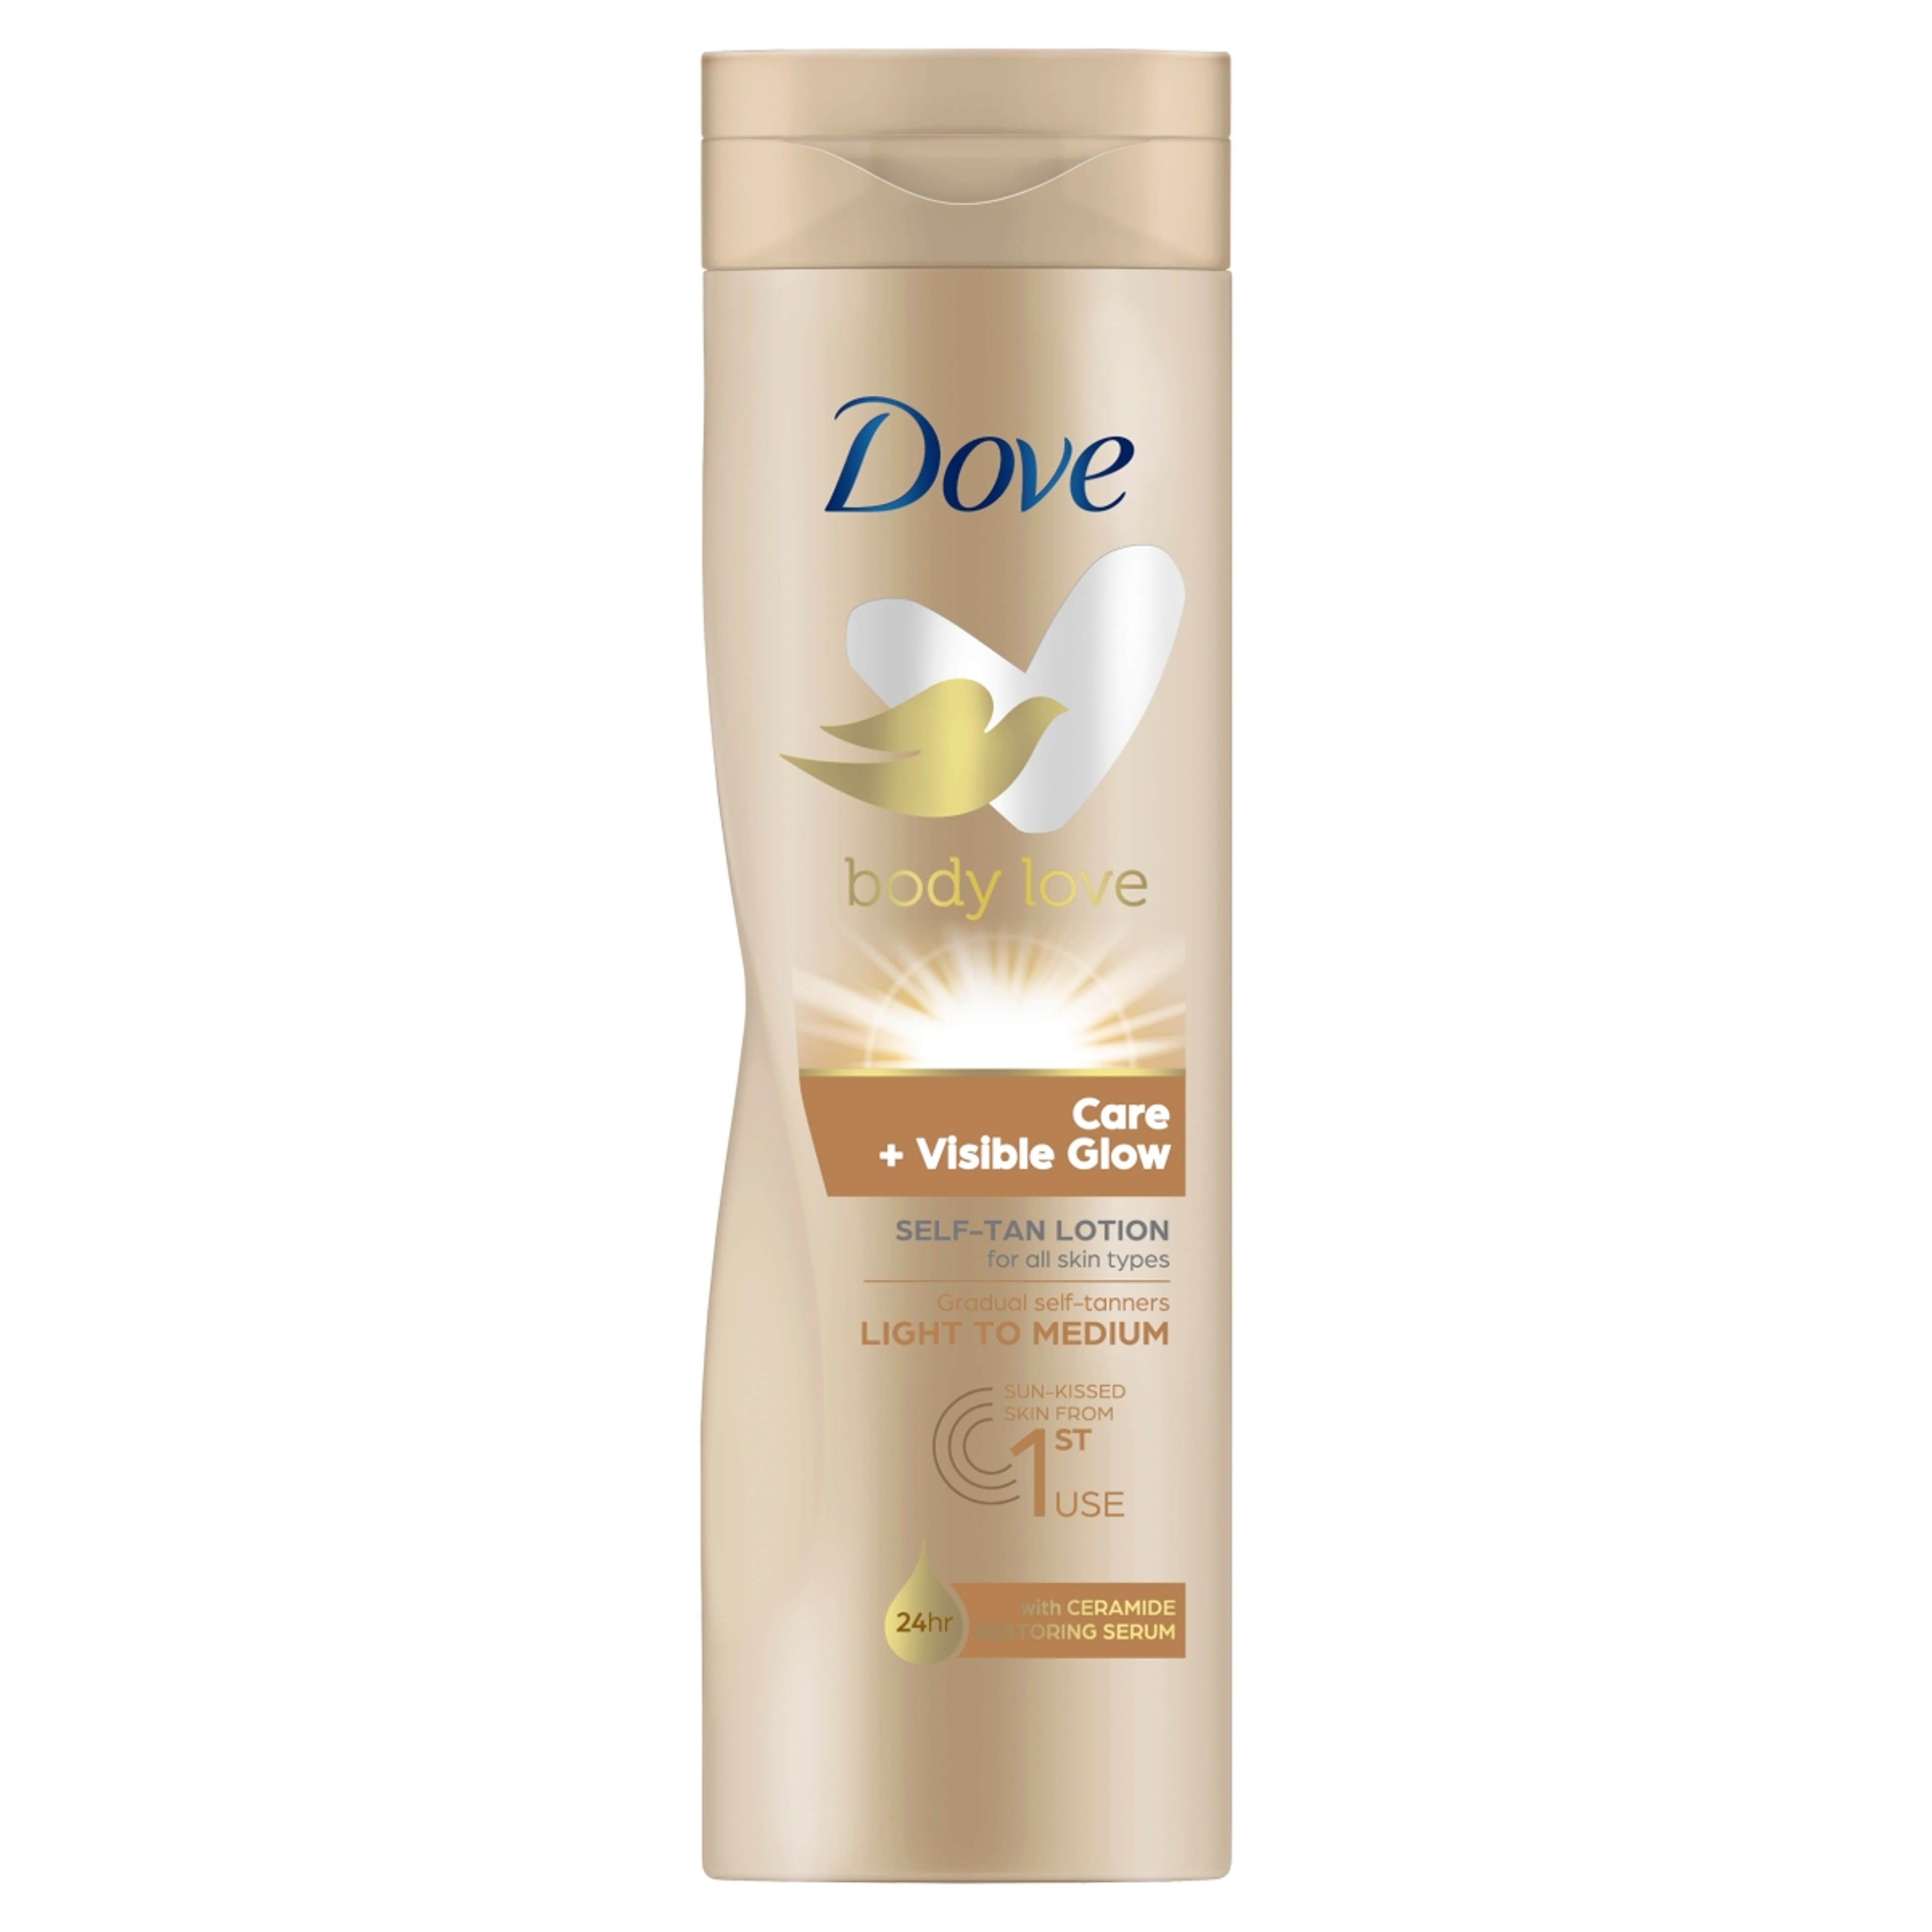 Dove Body Love Care + Visible Glow önbarnító testápoló a világos-közepes árnyalatú bőrért - 250 ml-1